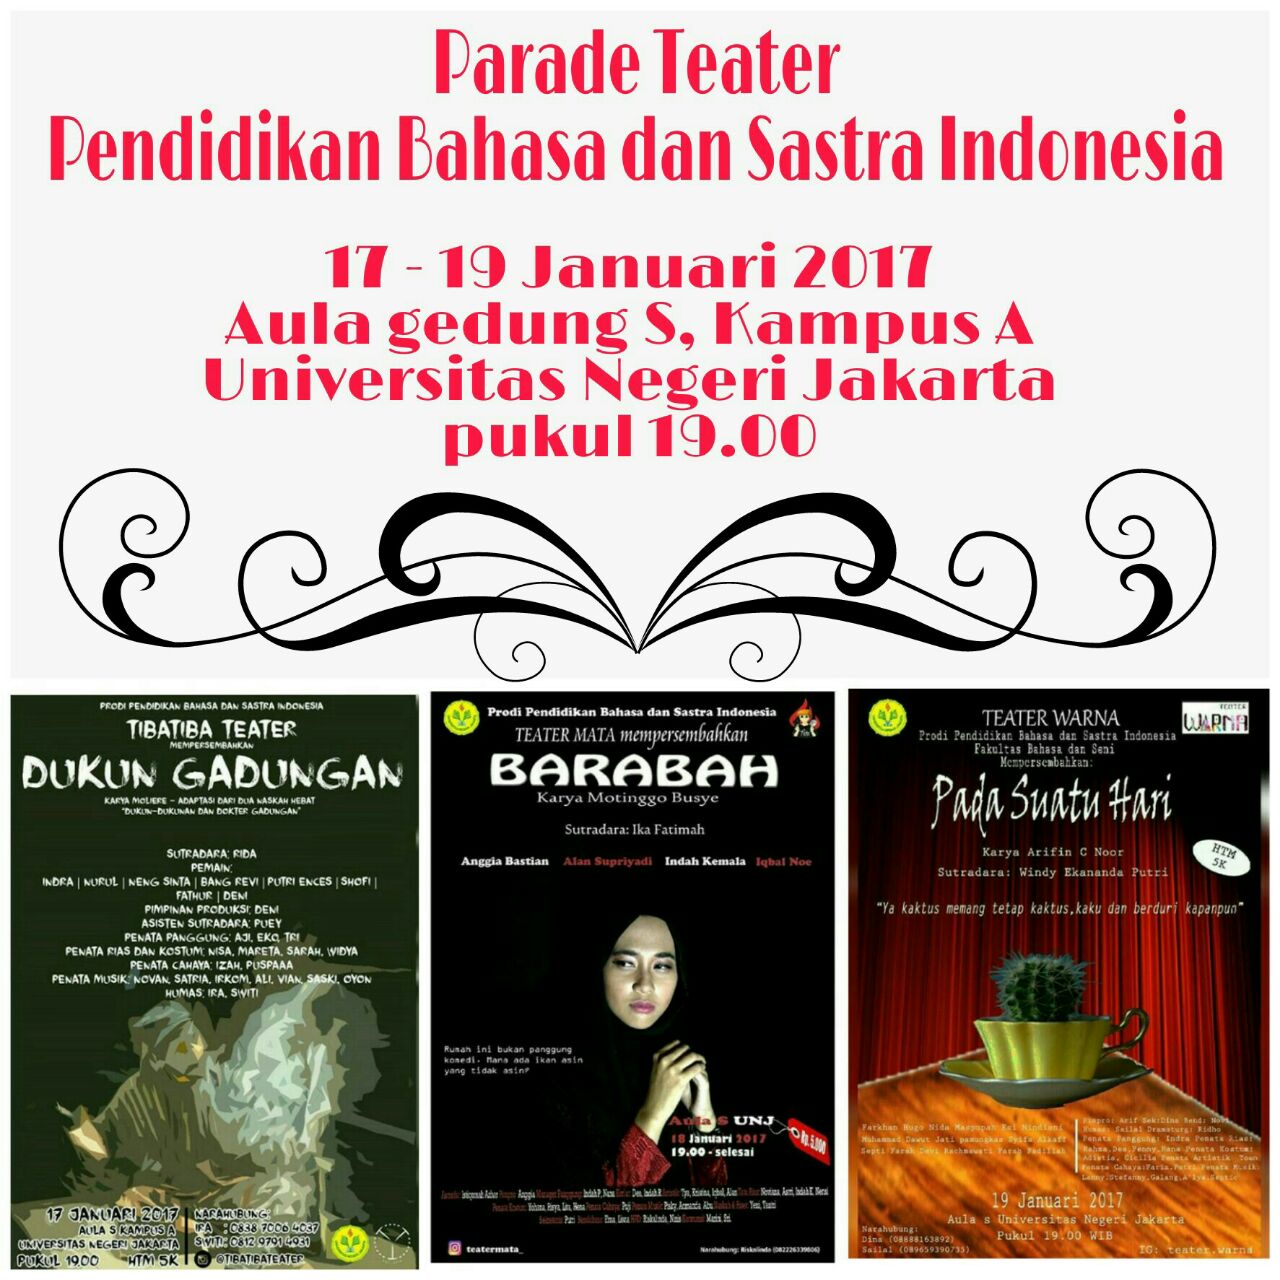 Parade Teater Prodi Pendidikan Bahasa dan Sastra Indonesia FBS UNJ